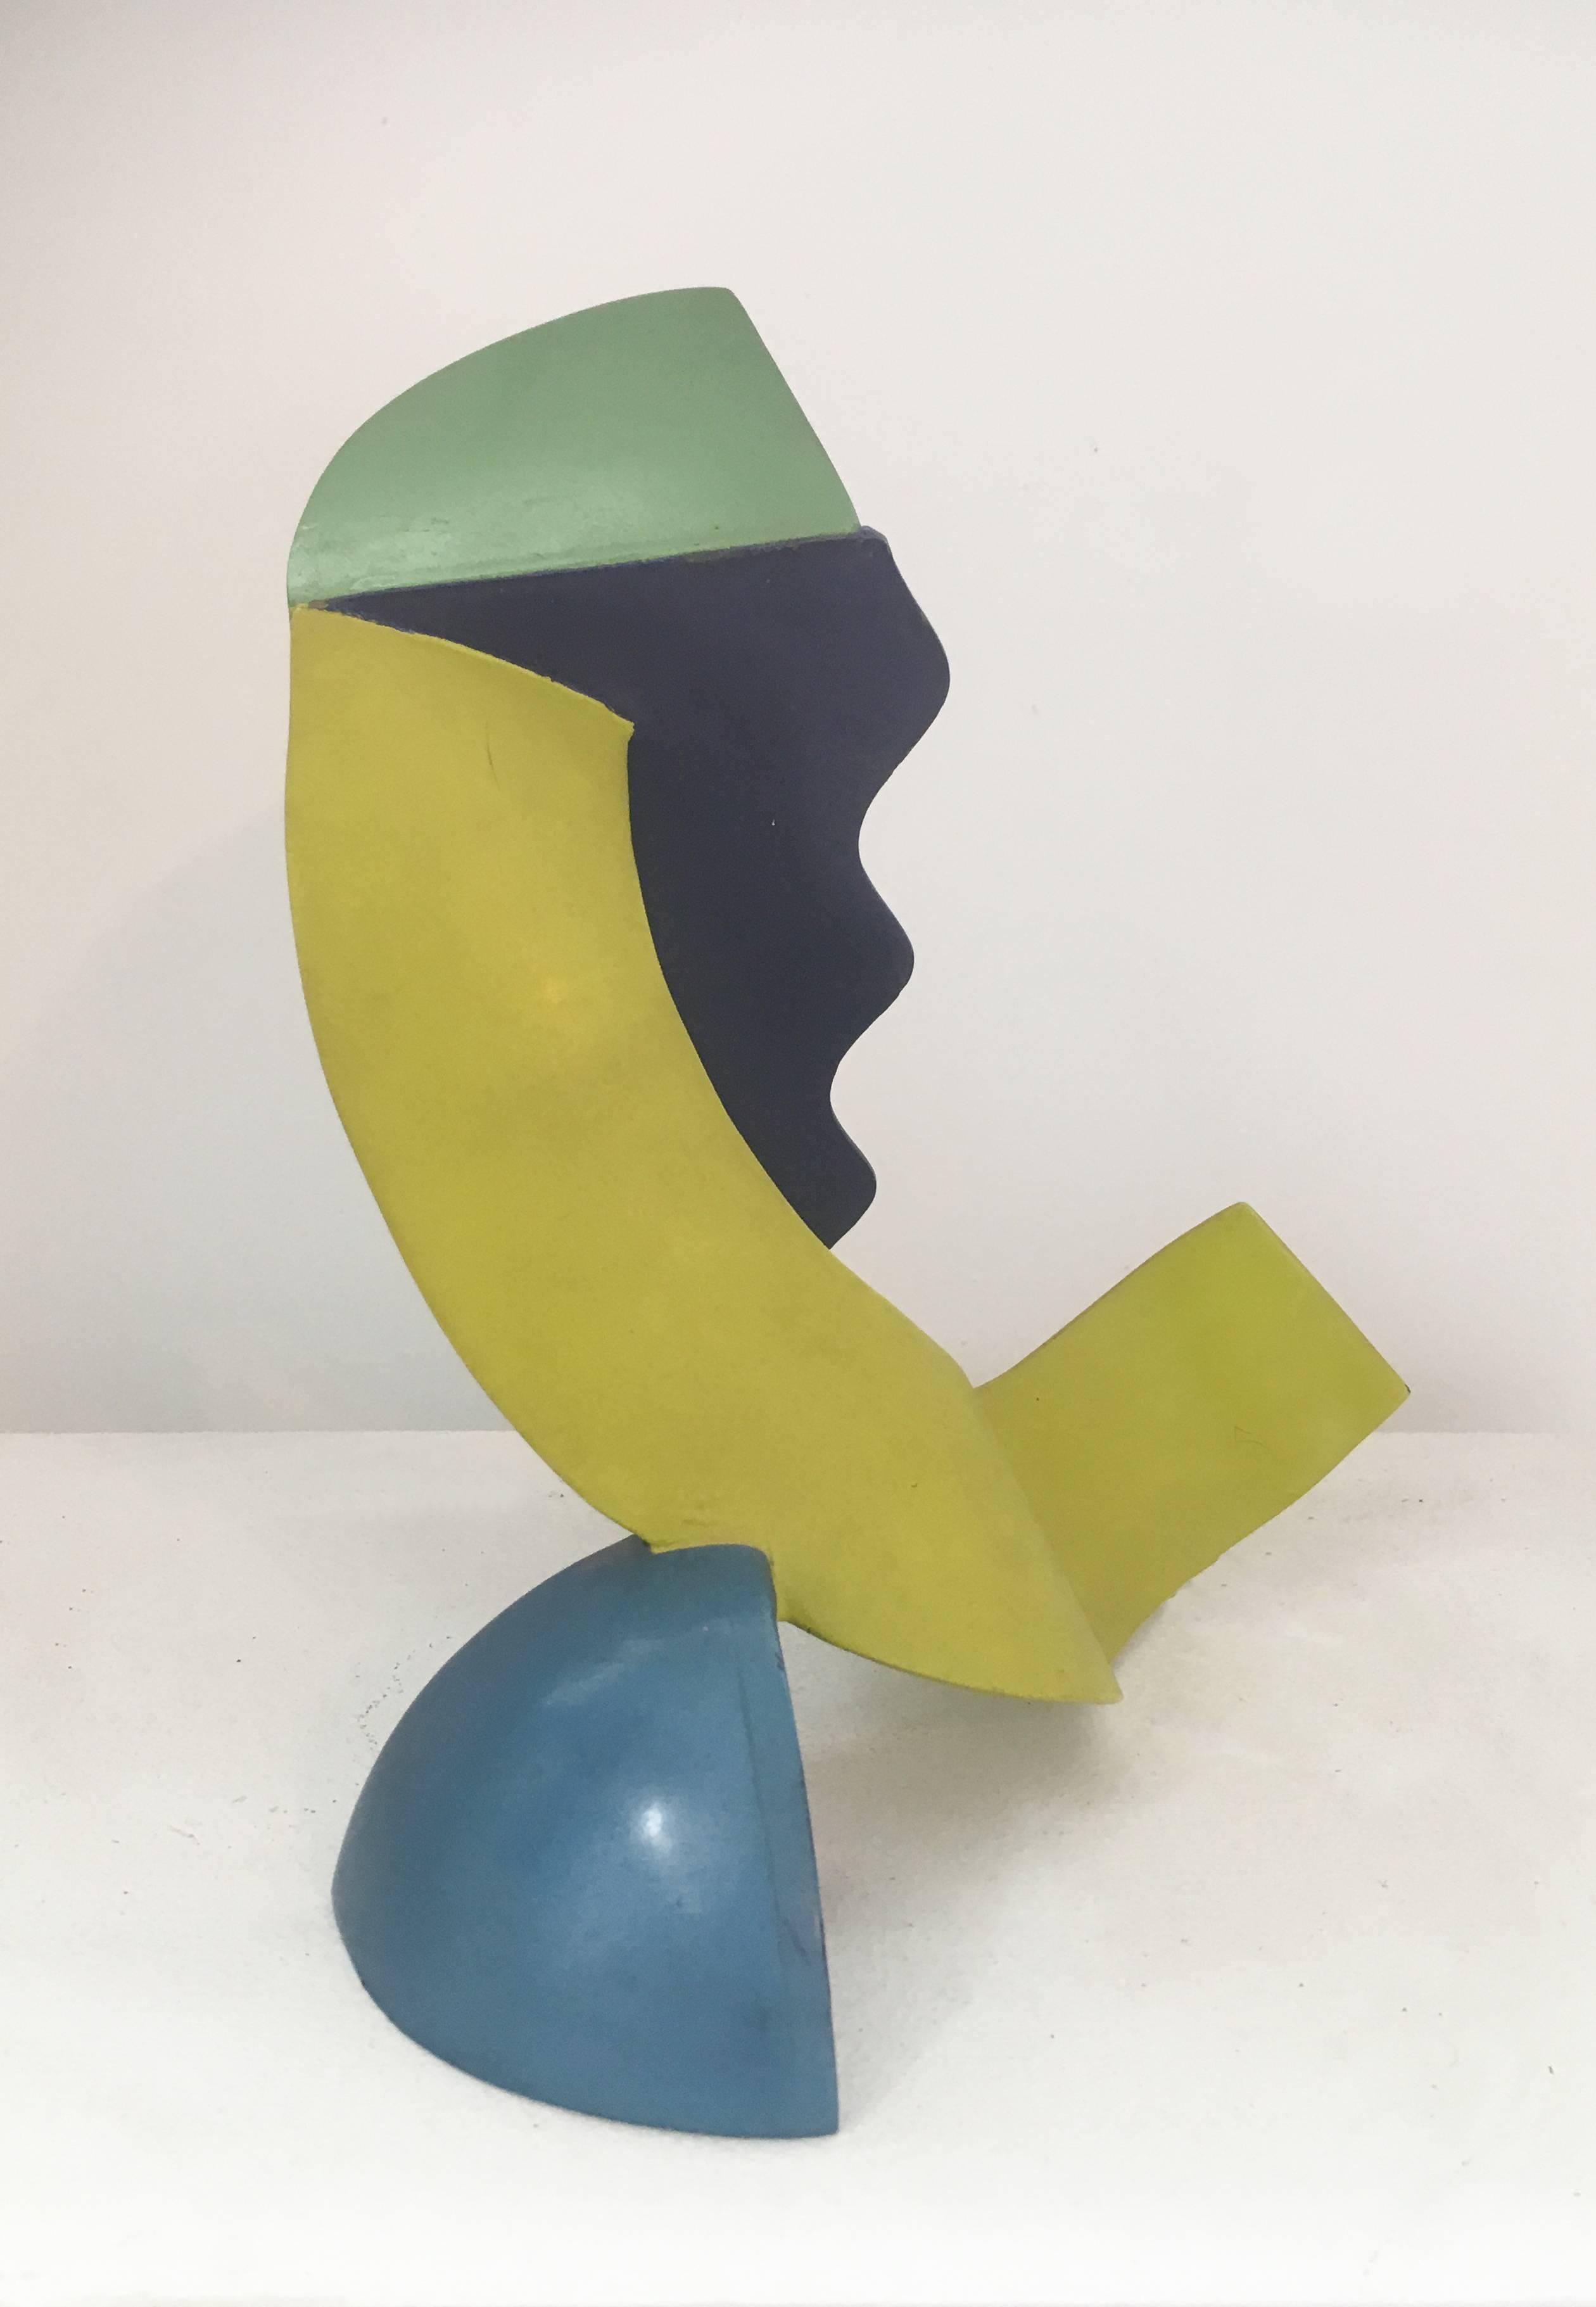 Calypso (Farbenfrohe abstrakte Mid-Century Modern-Skulptur in Gelb, Blau und Grün) (Geometrische Abstraktion), Sculpture, von Leon Smith